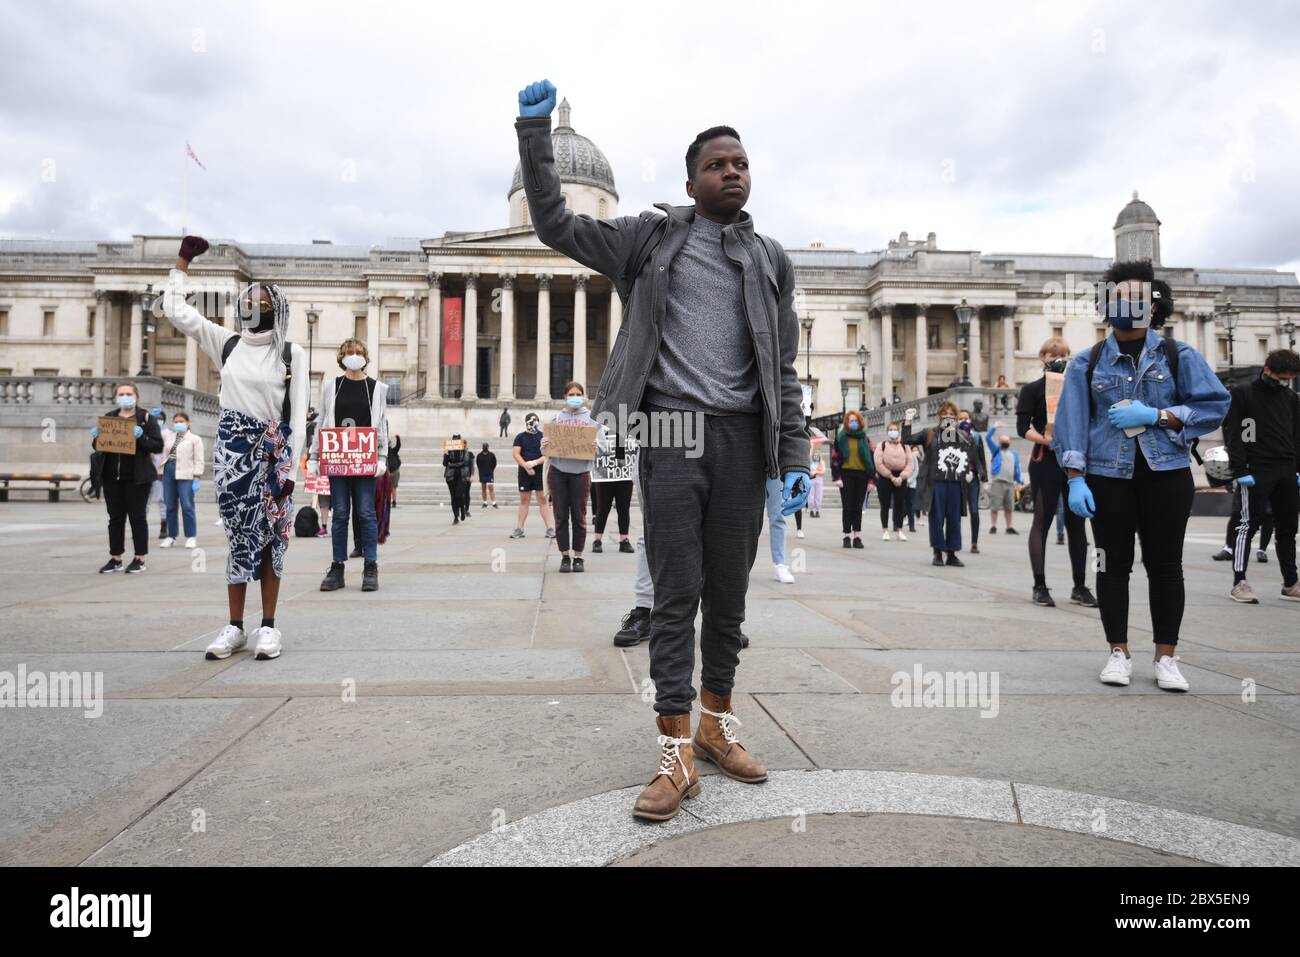 La gente participa en una protesta de rodillas por el asunto Black Lives en Trafalgar Square, Londres, en memoria de George Floyd que fue asesinado el 25 de mayo mientras estaba bajo custodia policial en la ciudad estadounidense de Minneapolis. Foto de stock